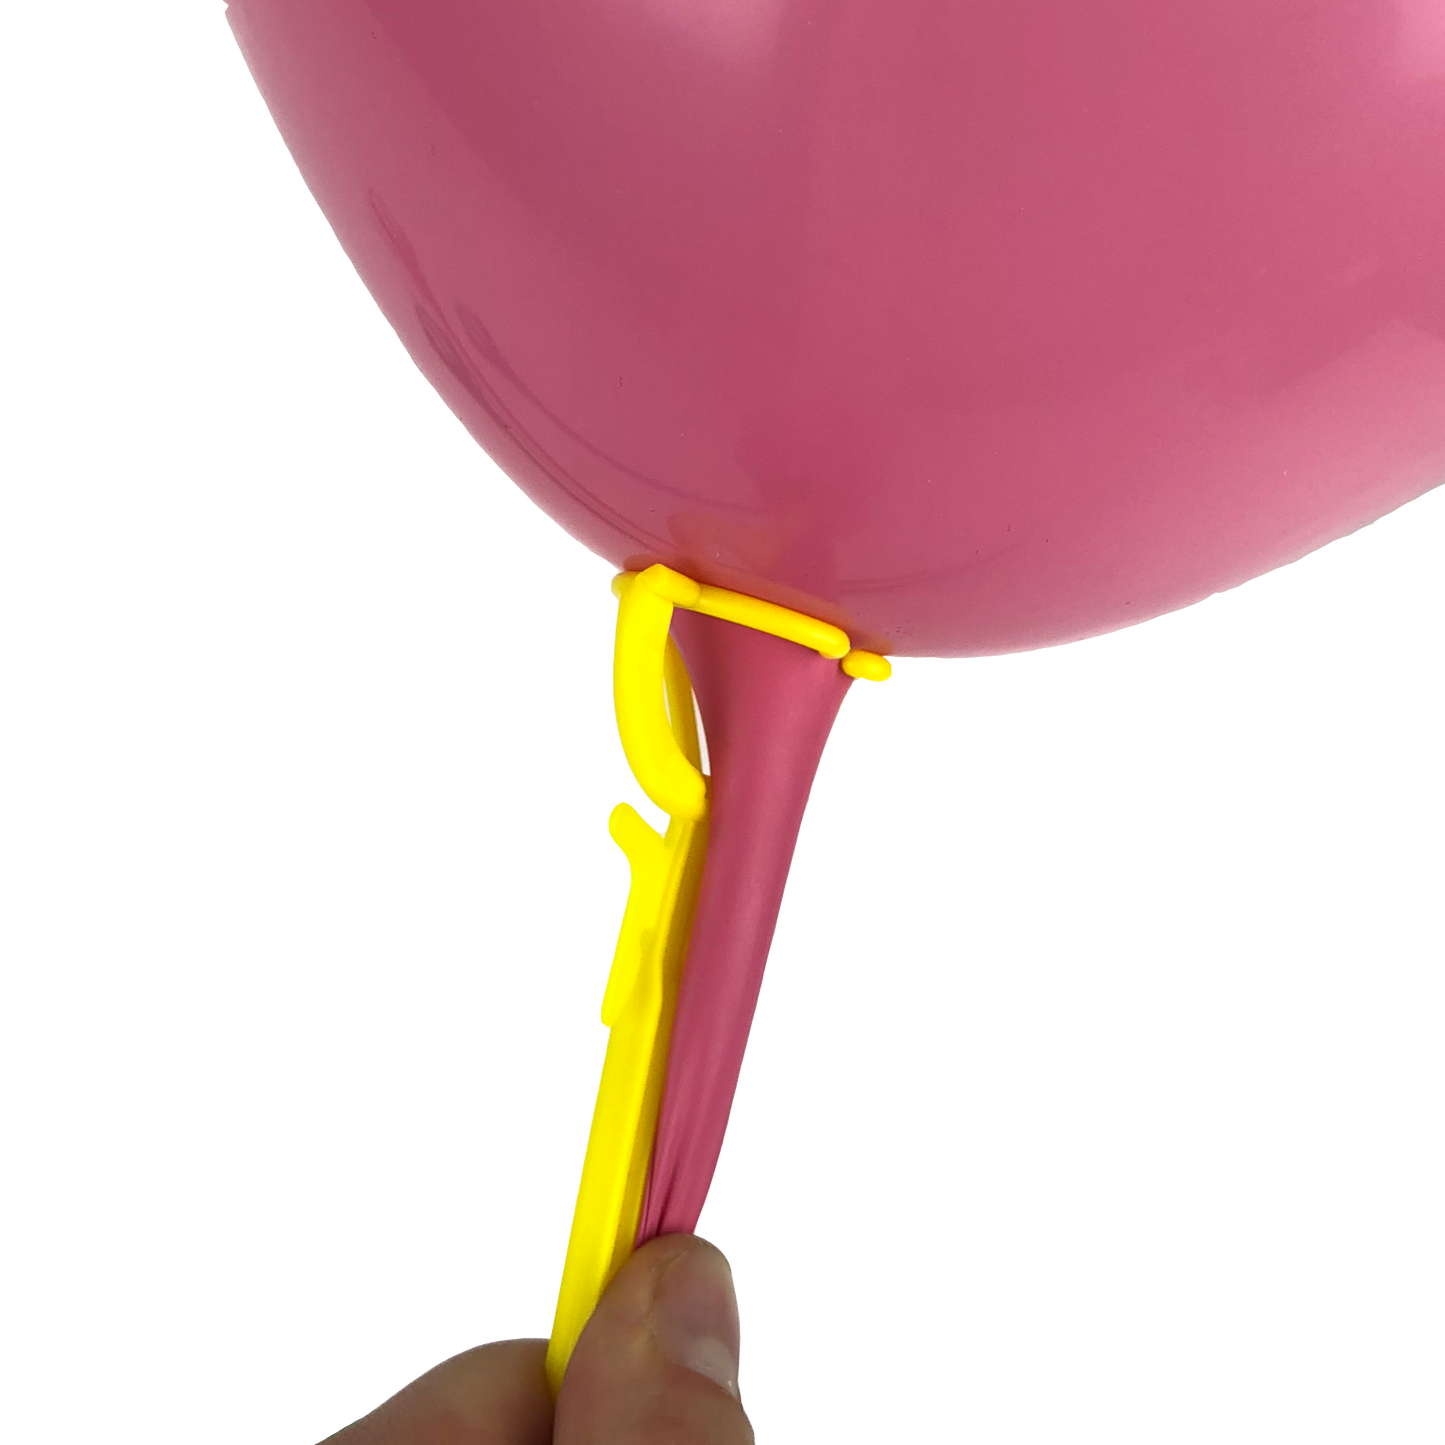 ZBS-007 - Einteilige orange Ballon-Haltestäbe 35 cm